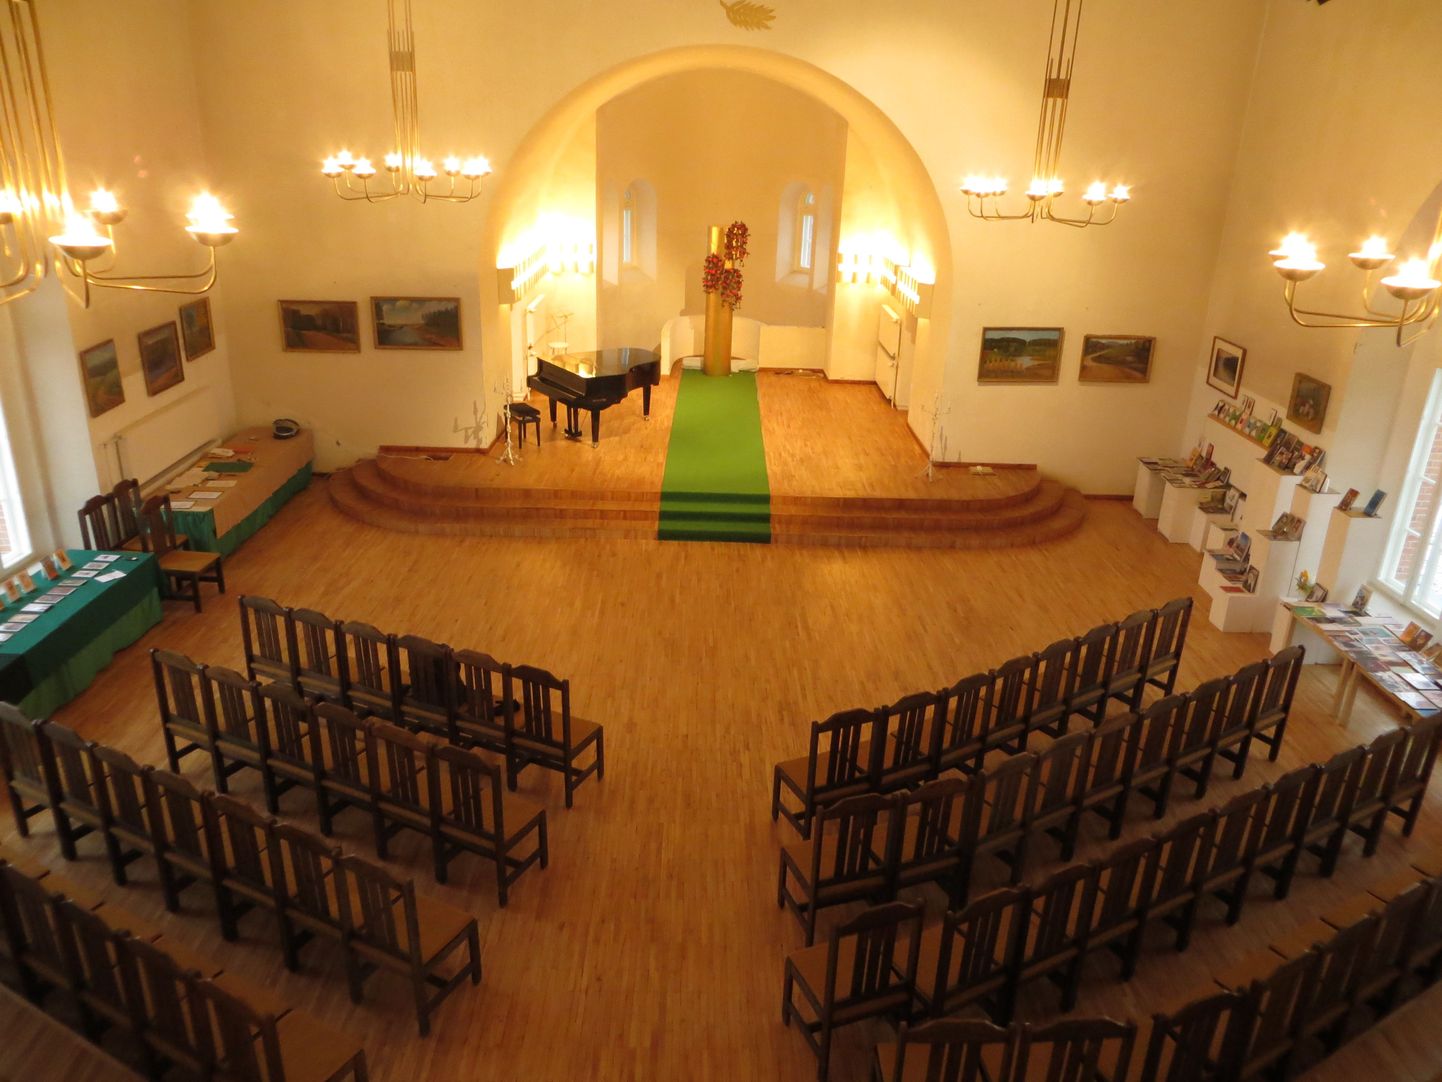 109 aastases Tõrva kirik-kammersaalis toimuvad lisaks näitustele ka kontserdid, raamatuesitlused ja pidulikud aktused.